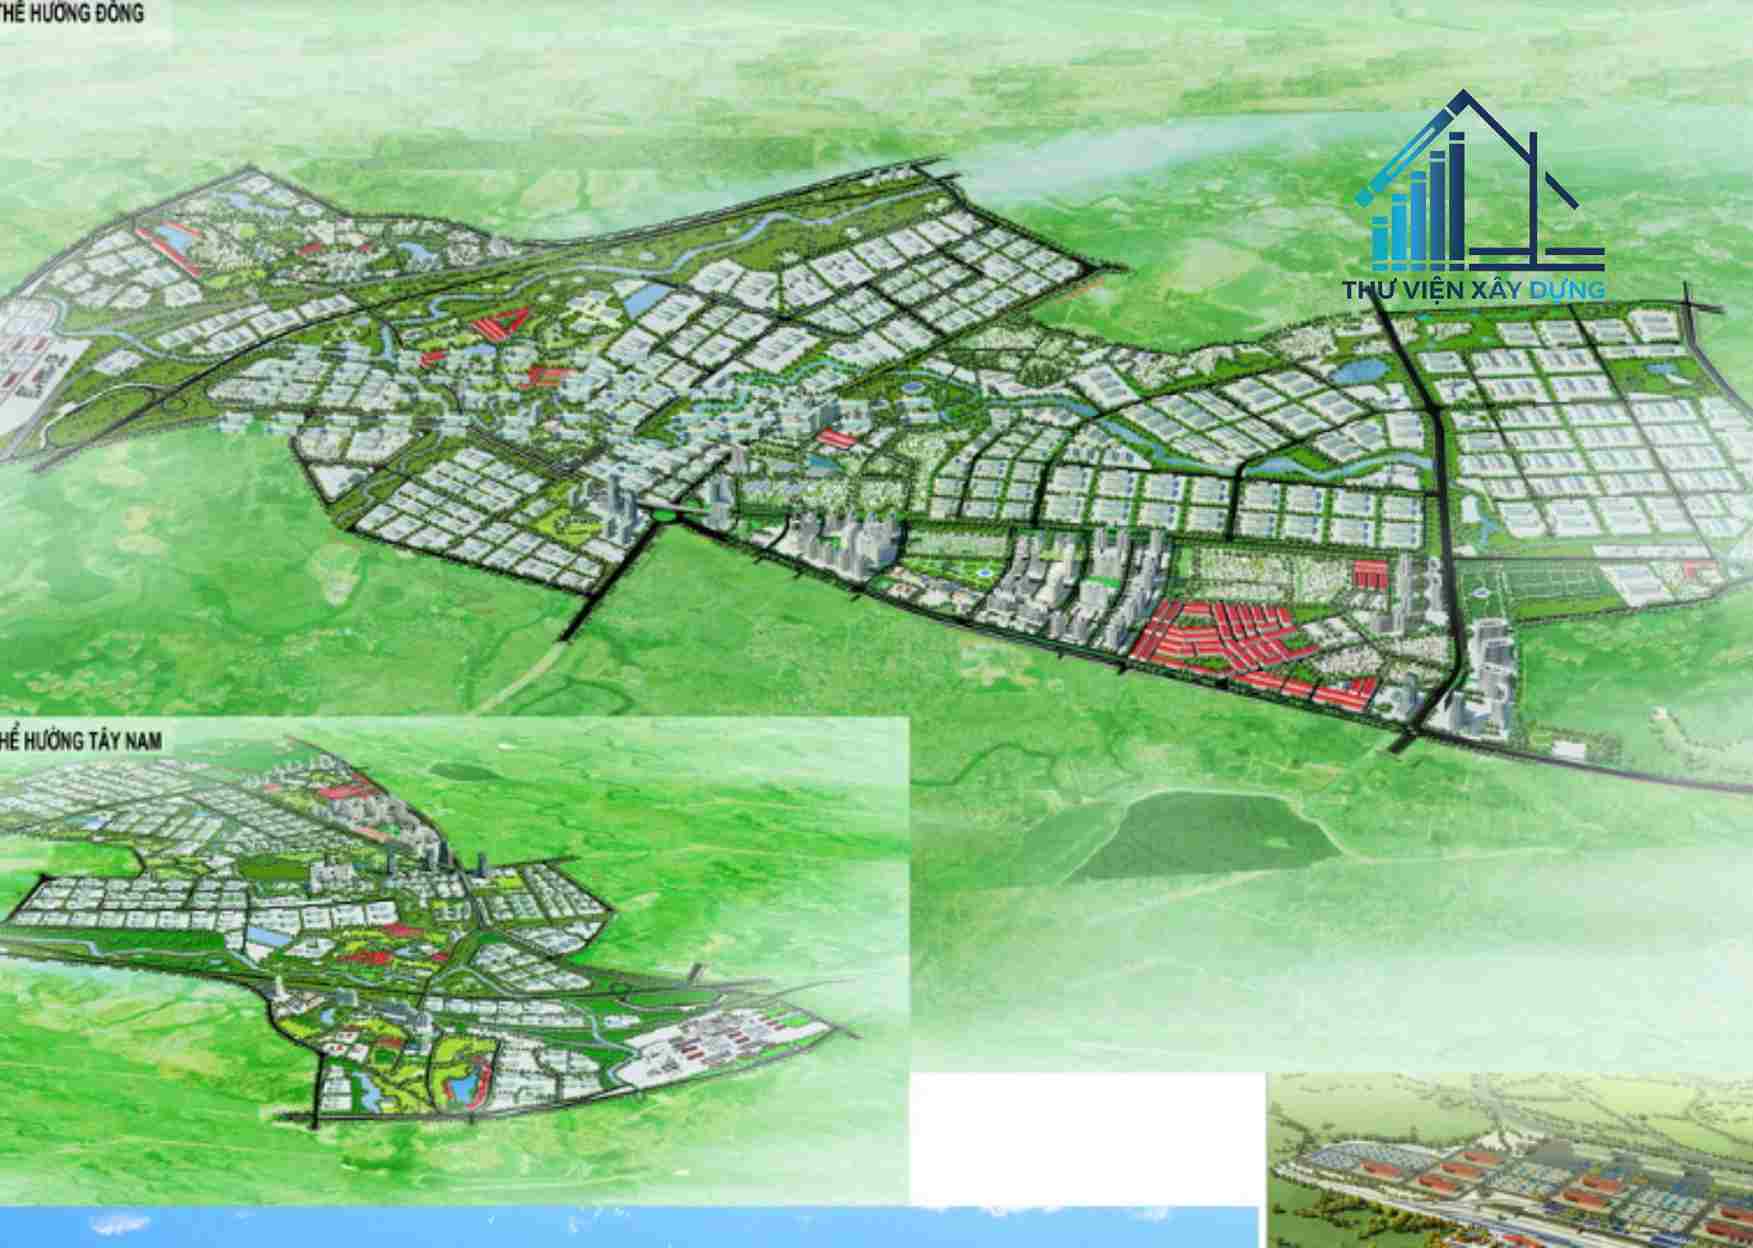 Phối cảnh tổng thể QHPK C4 tỷ lệ 1/2000 phát triển công nghiệp và đô thị phụ trợ tại huyện Bình Xuyên đến năm 2030 tầm nhìn đến năm 2050 